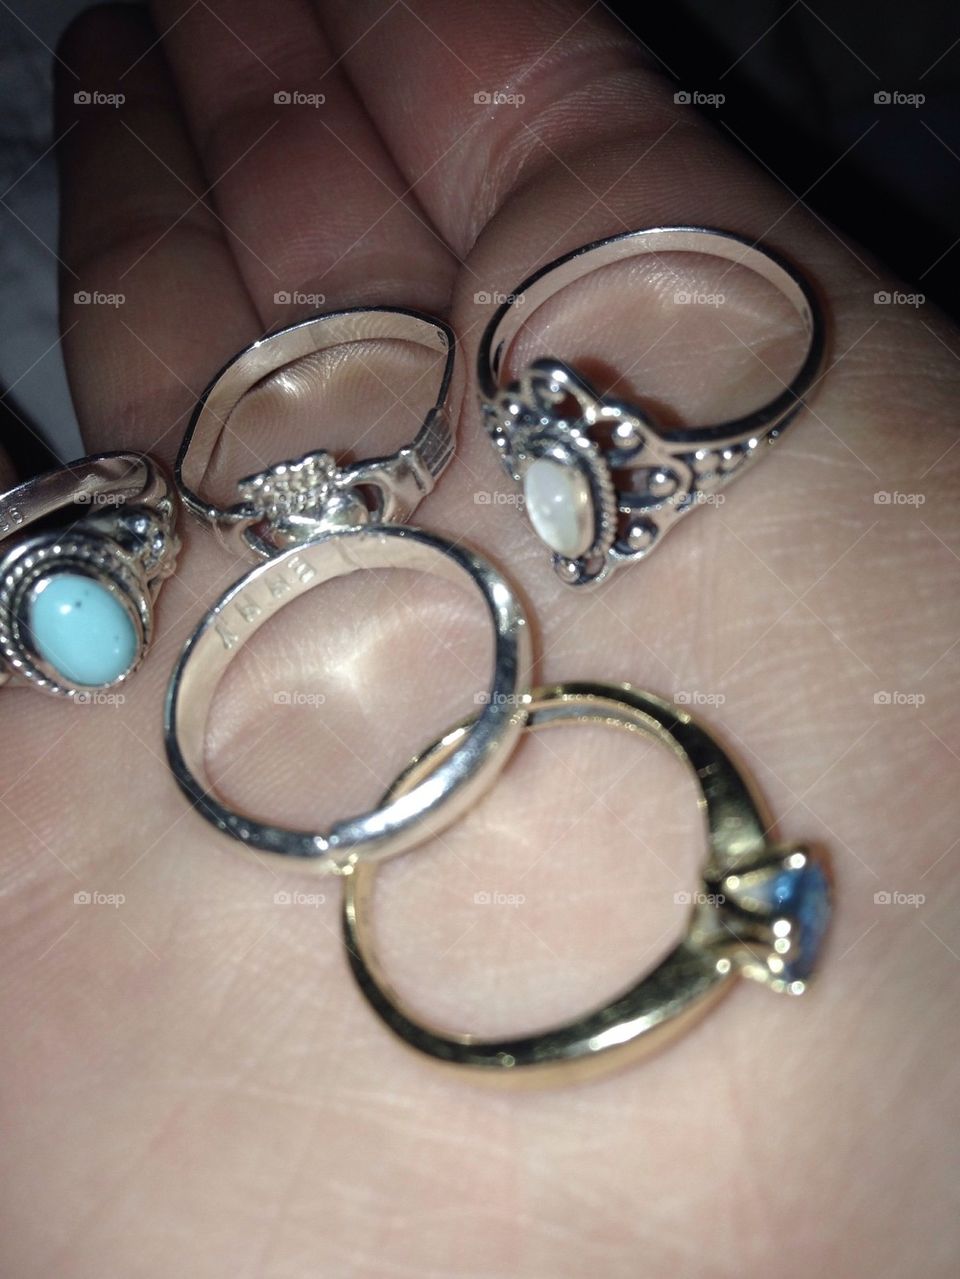 Rings